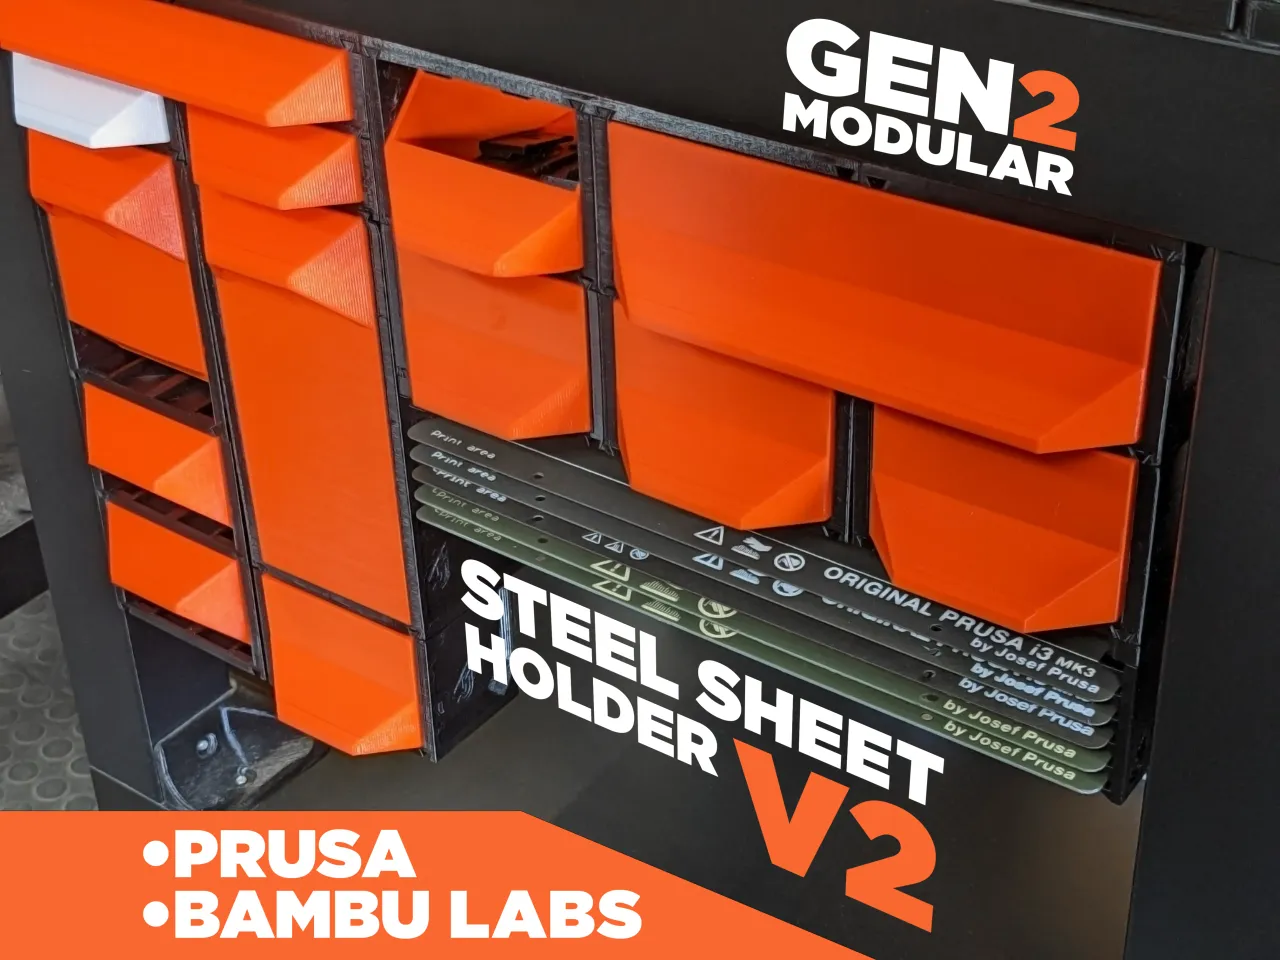 GEN2 Steel Sheet Holder V2 for Lack Enclosures by Jerrari, Download free  STL model